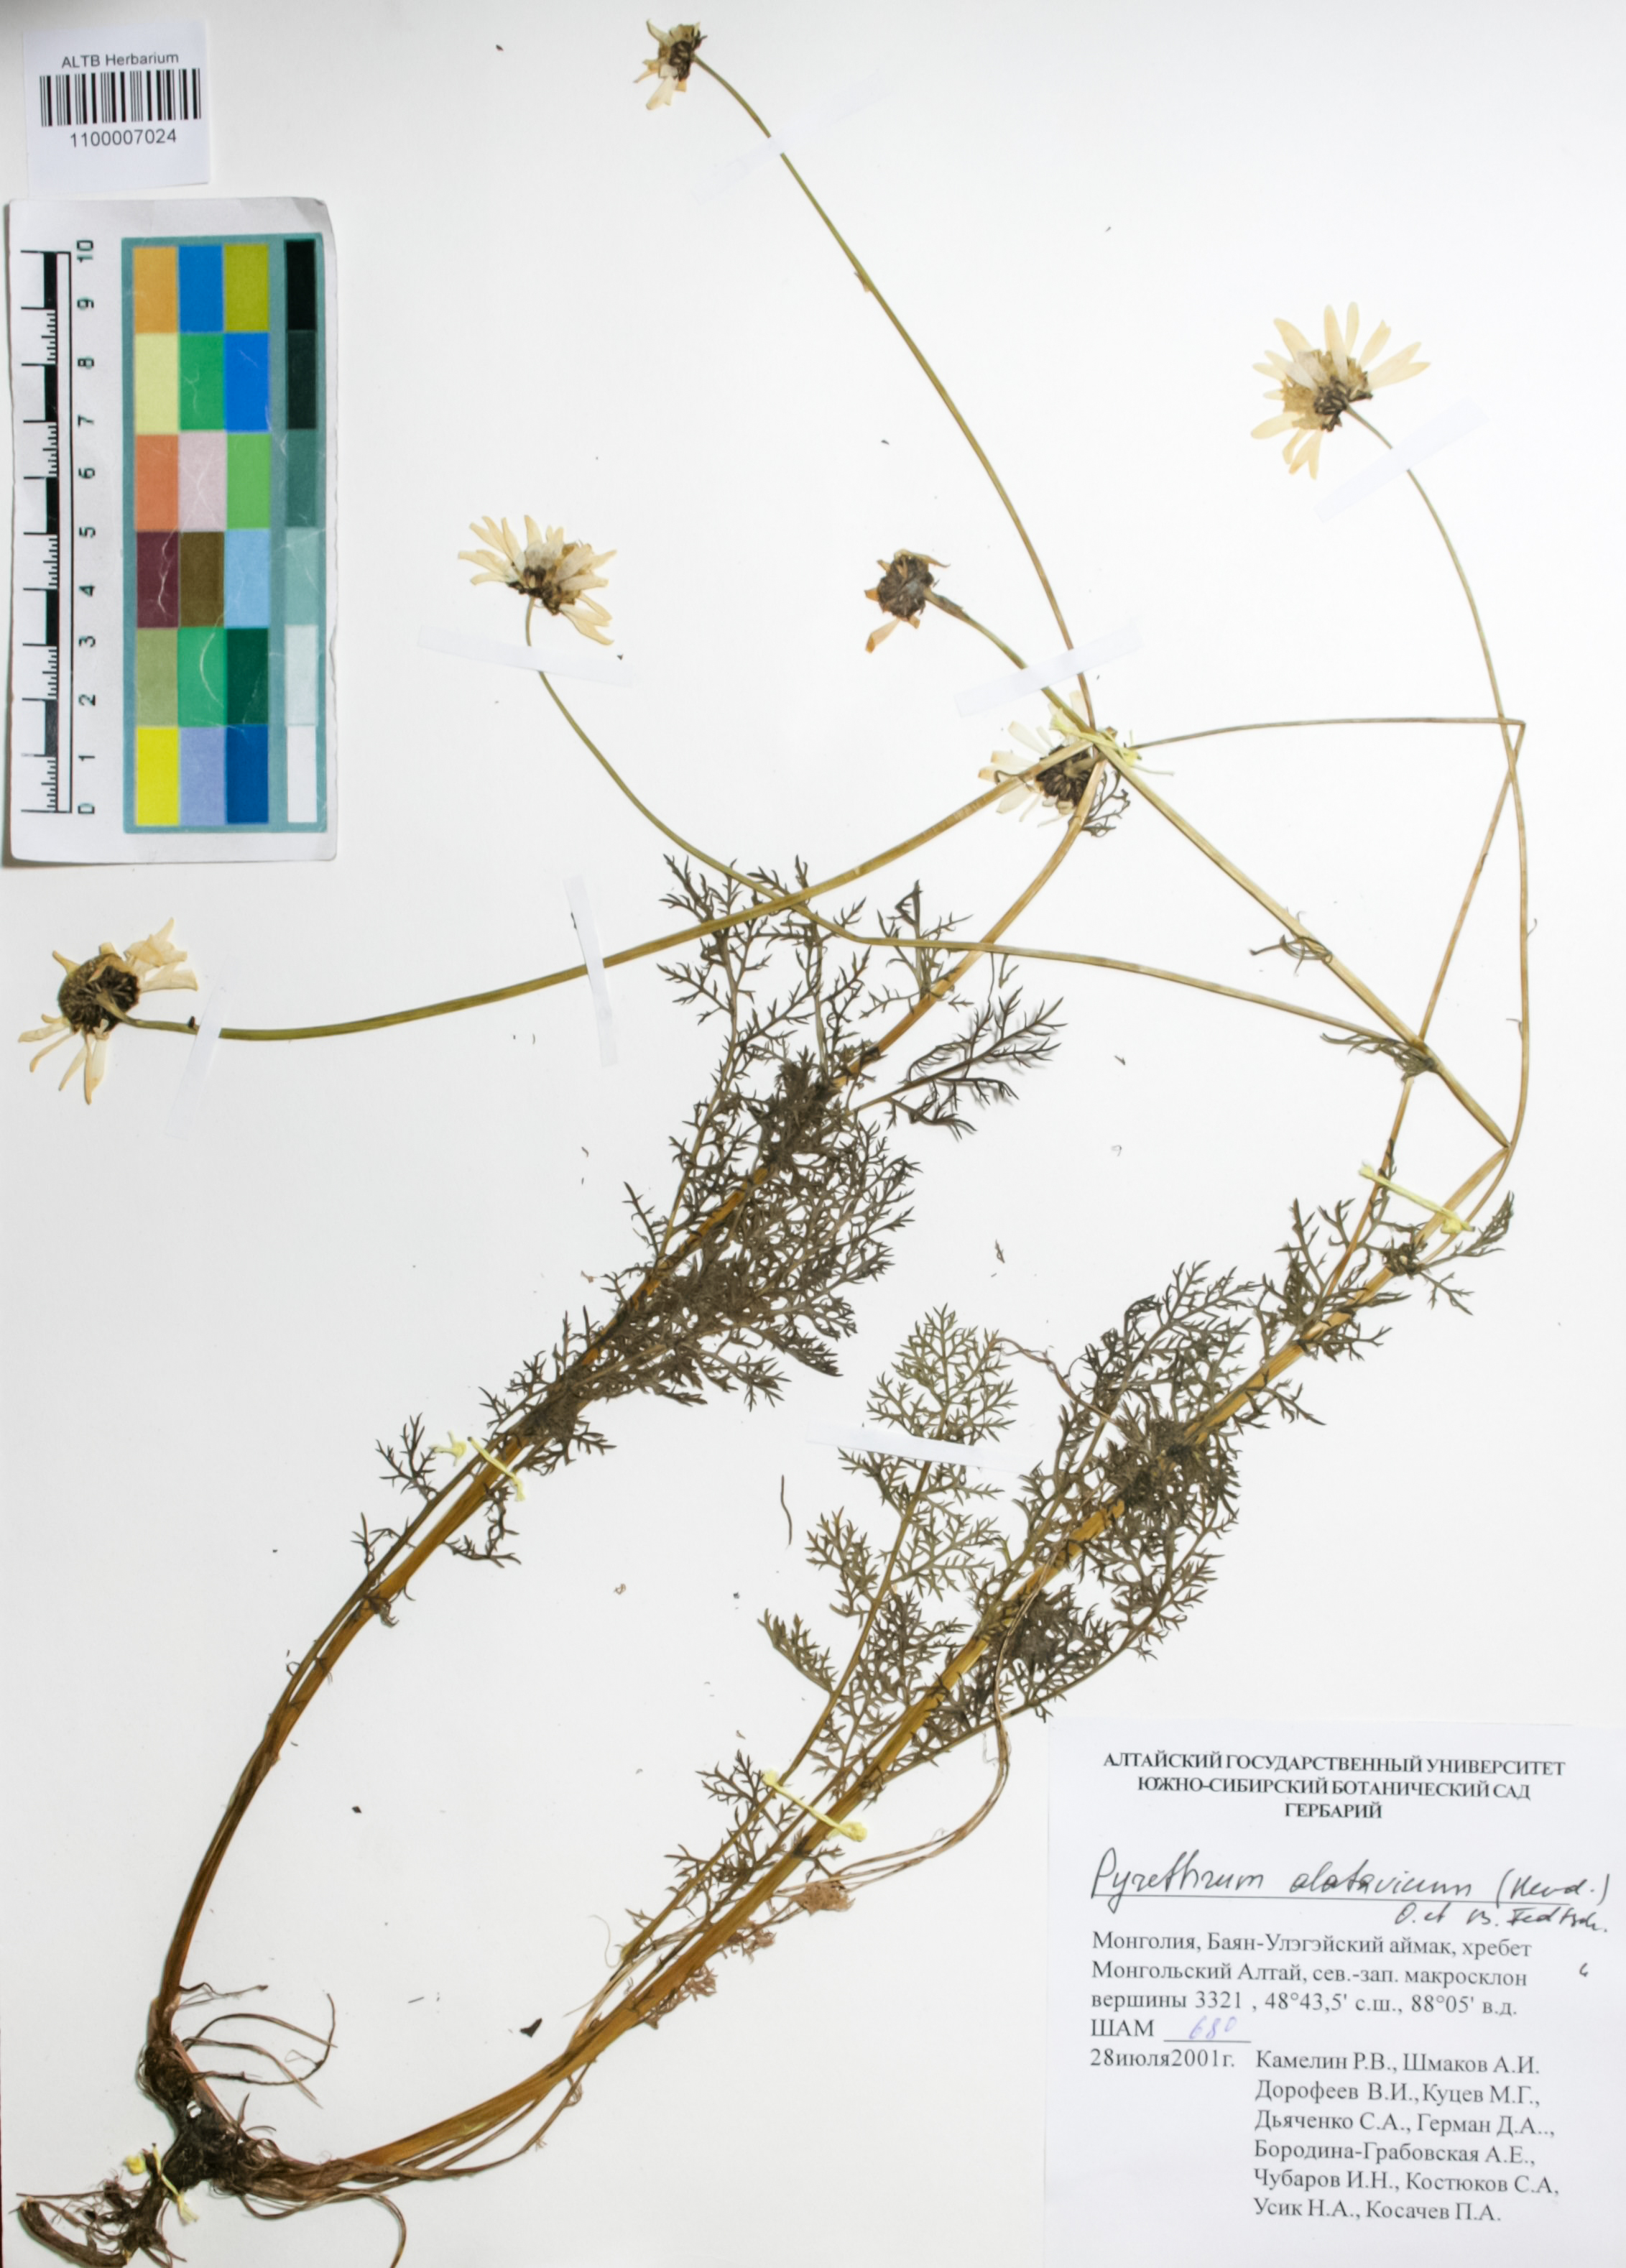 Asteraceae,Pyrethrum alatavicum (Herd.) O.Fedtsch. & B.Fedtsch.